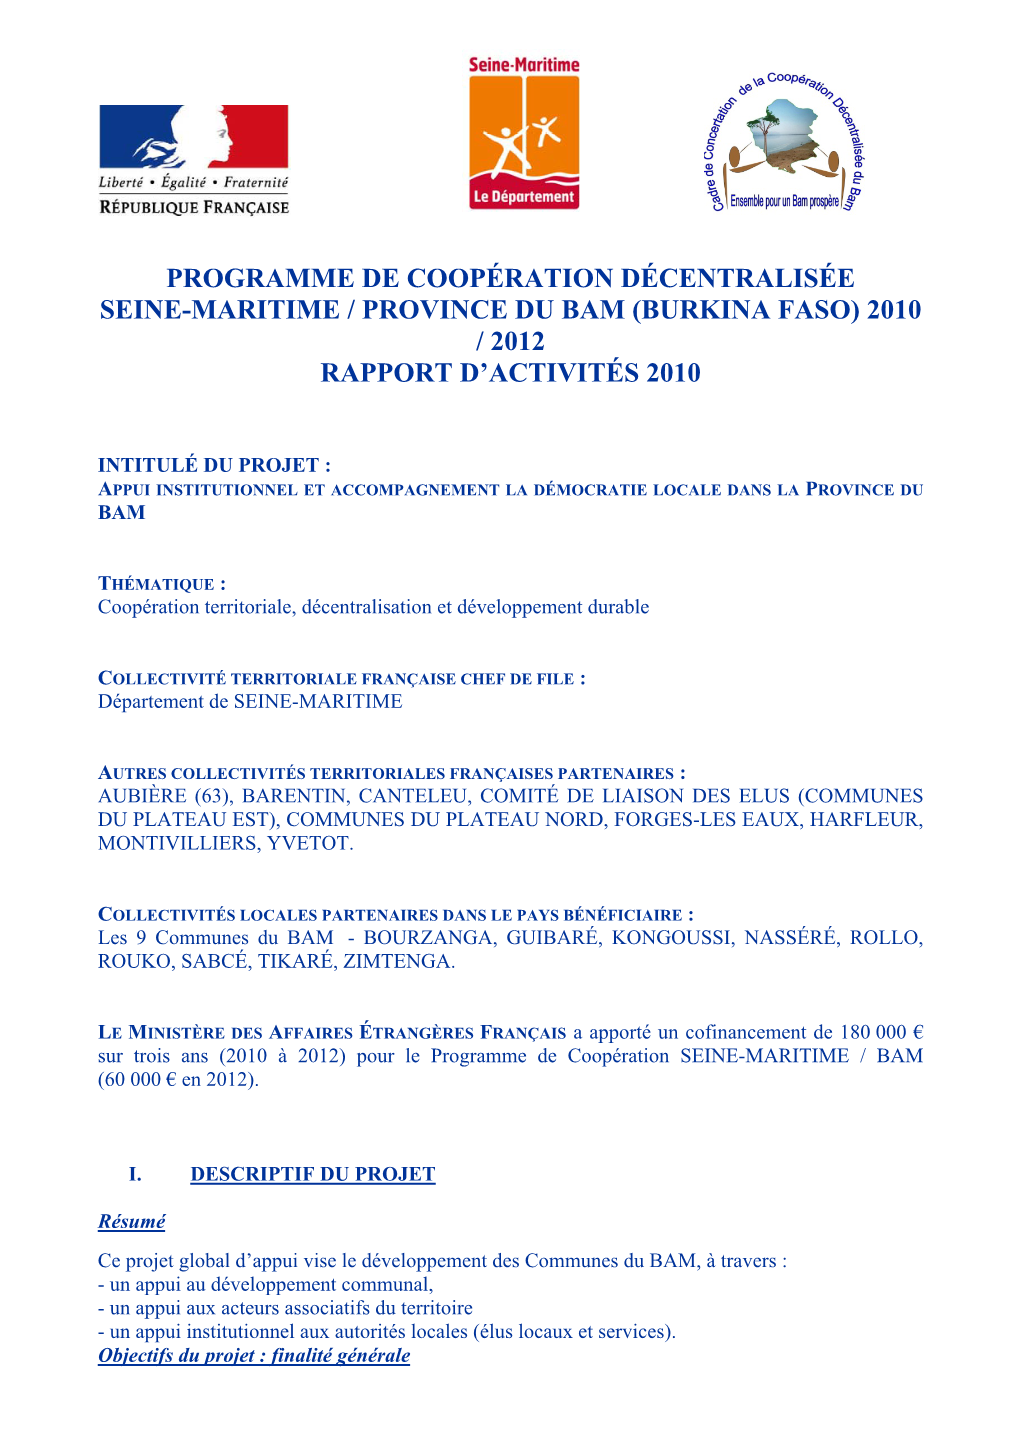 Programme De Coopération Décentralisée Seine-Maritime / Province Du Bam (Burkina Faso) 2010 / 2012 Rapport D’Activités 2010